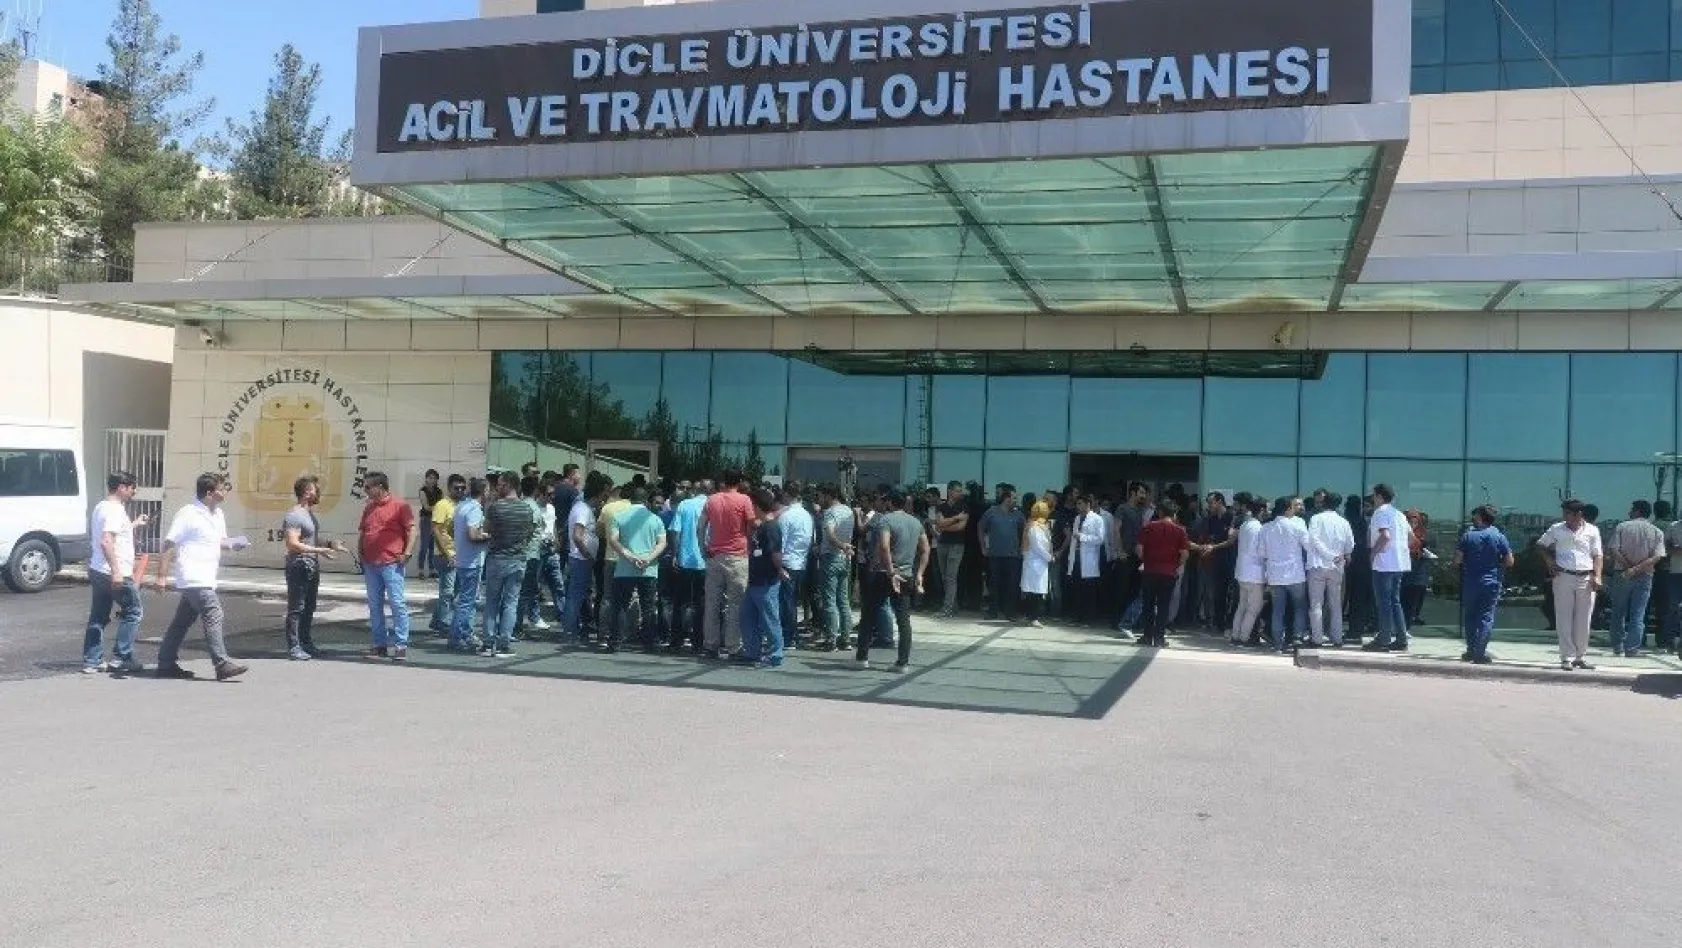 Diyarbakır'da doktora şiddet kınandı
